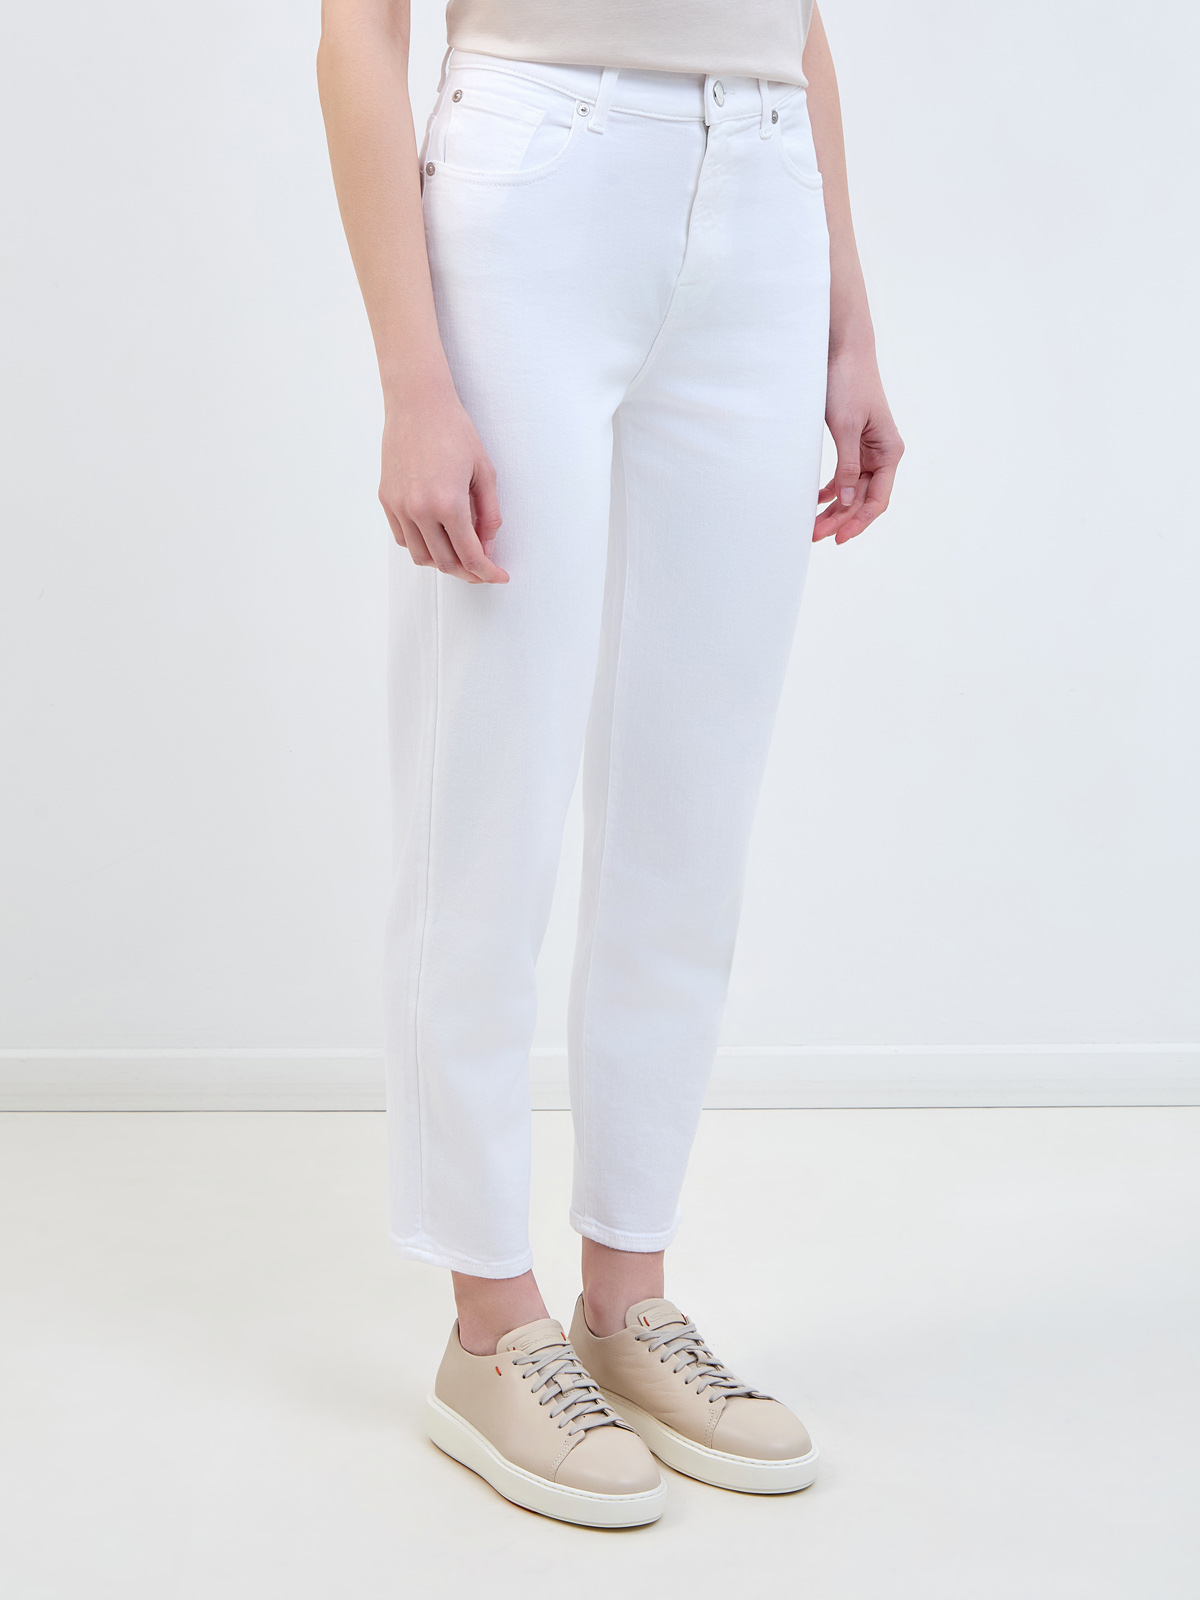 Укороченные джинсы из денима Luxe Vintage с нашивкой на поясе в тон 7 FOR ALL MANKIND, цвет белый, размер S;M;L - фото 3